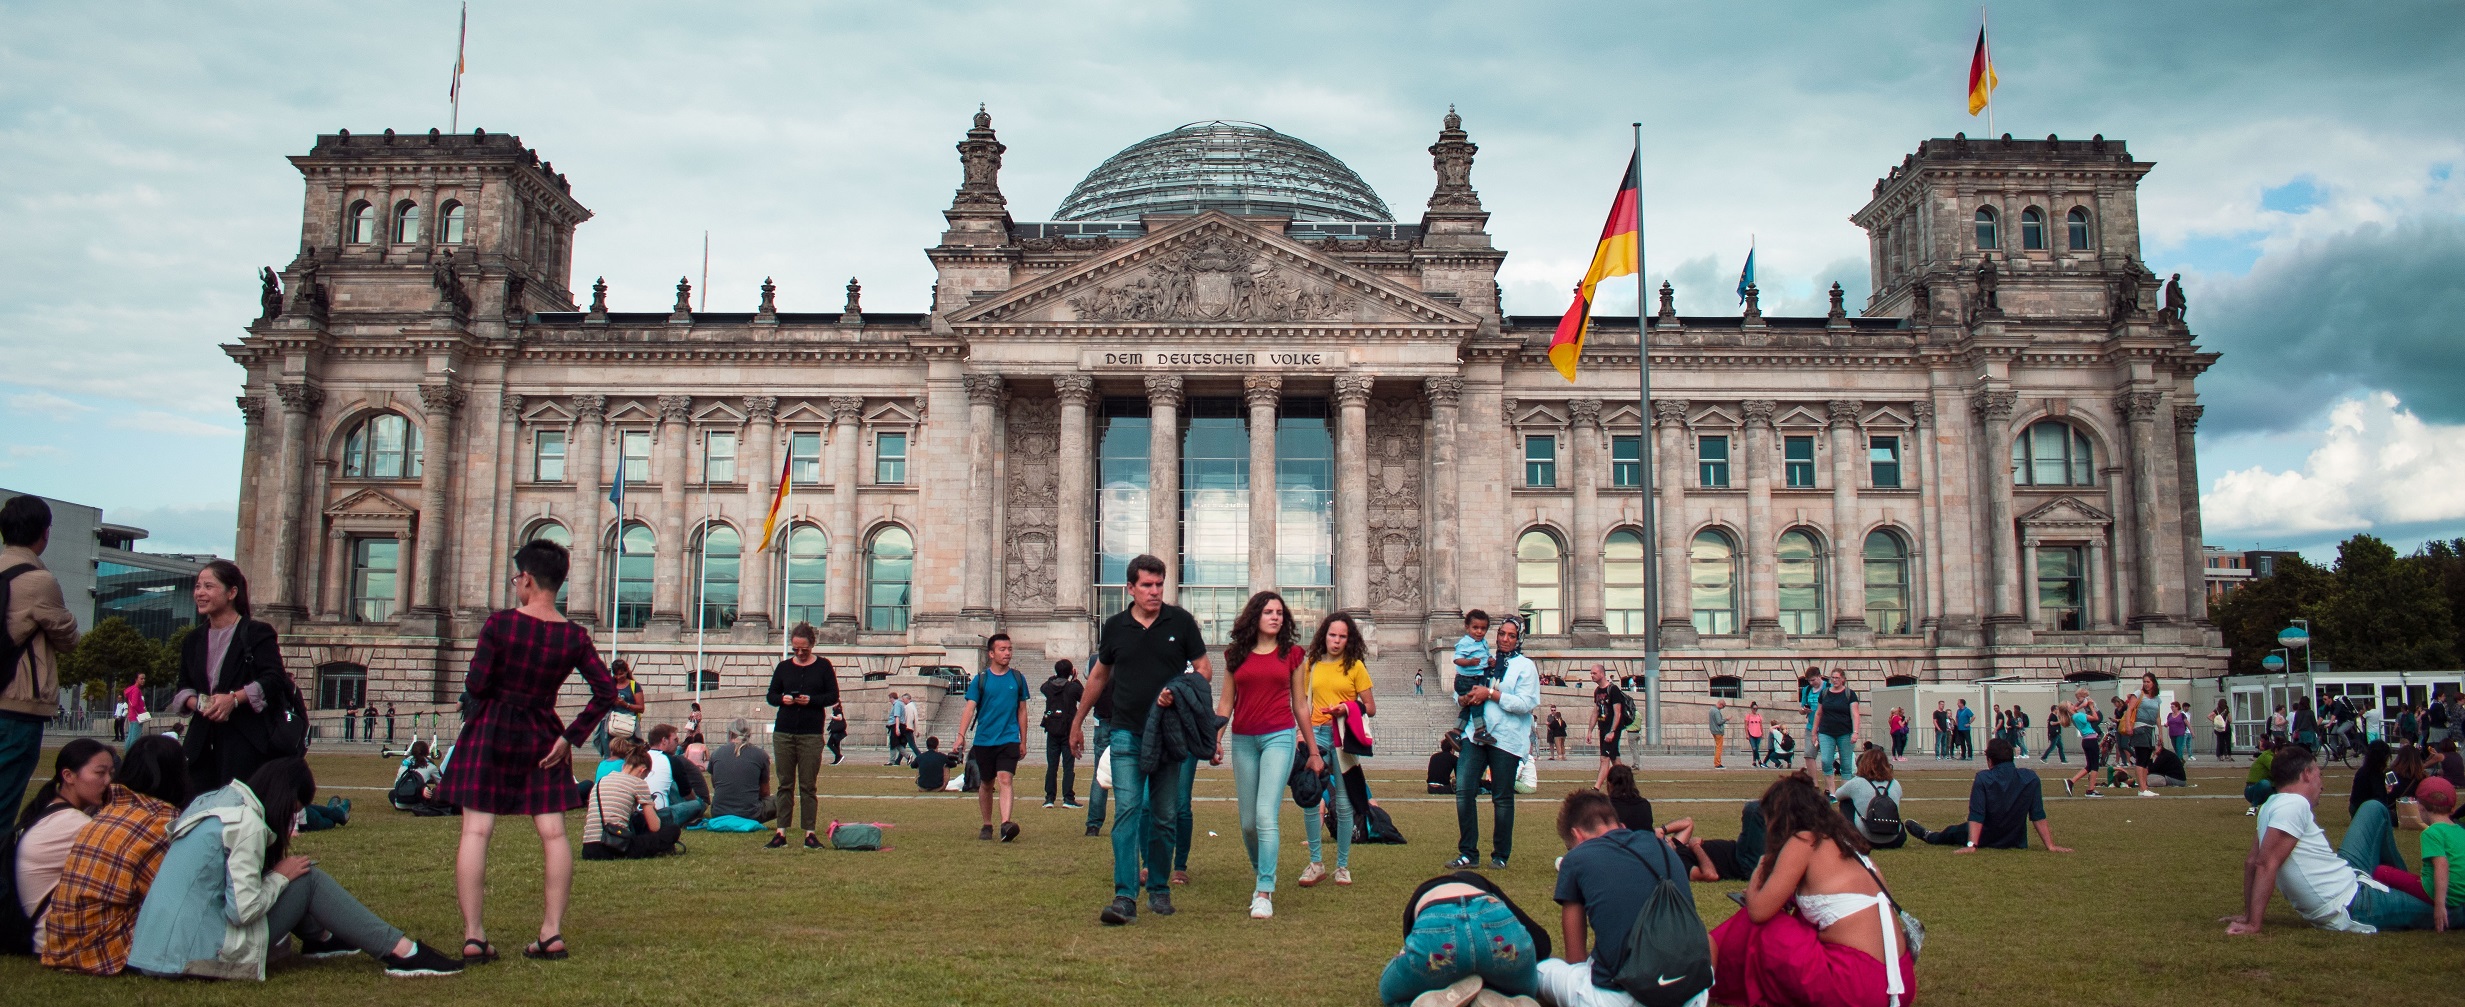 Zu sehen ist der Bundestag. Davor sitzen Menschen auf der Wiese.